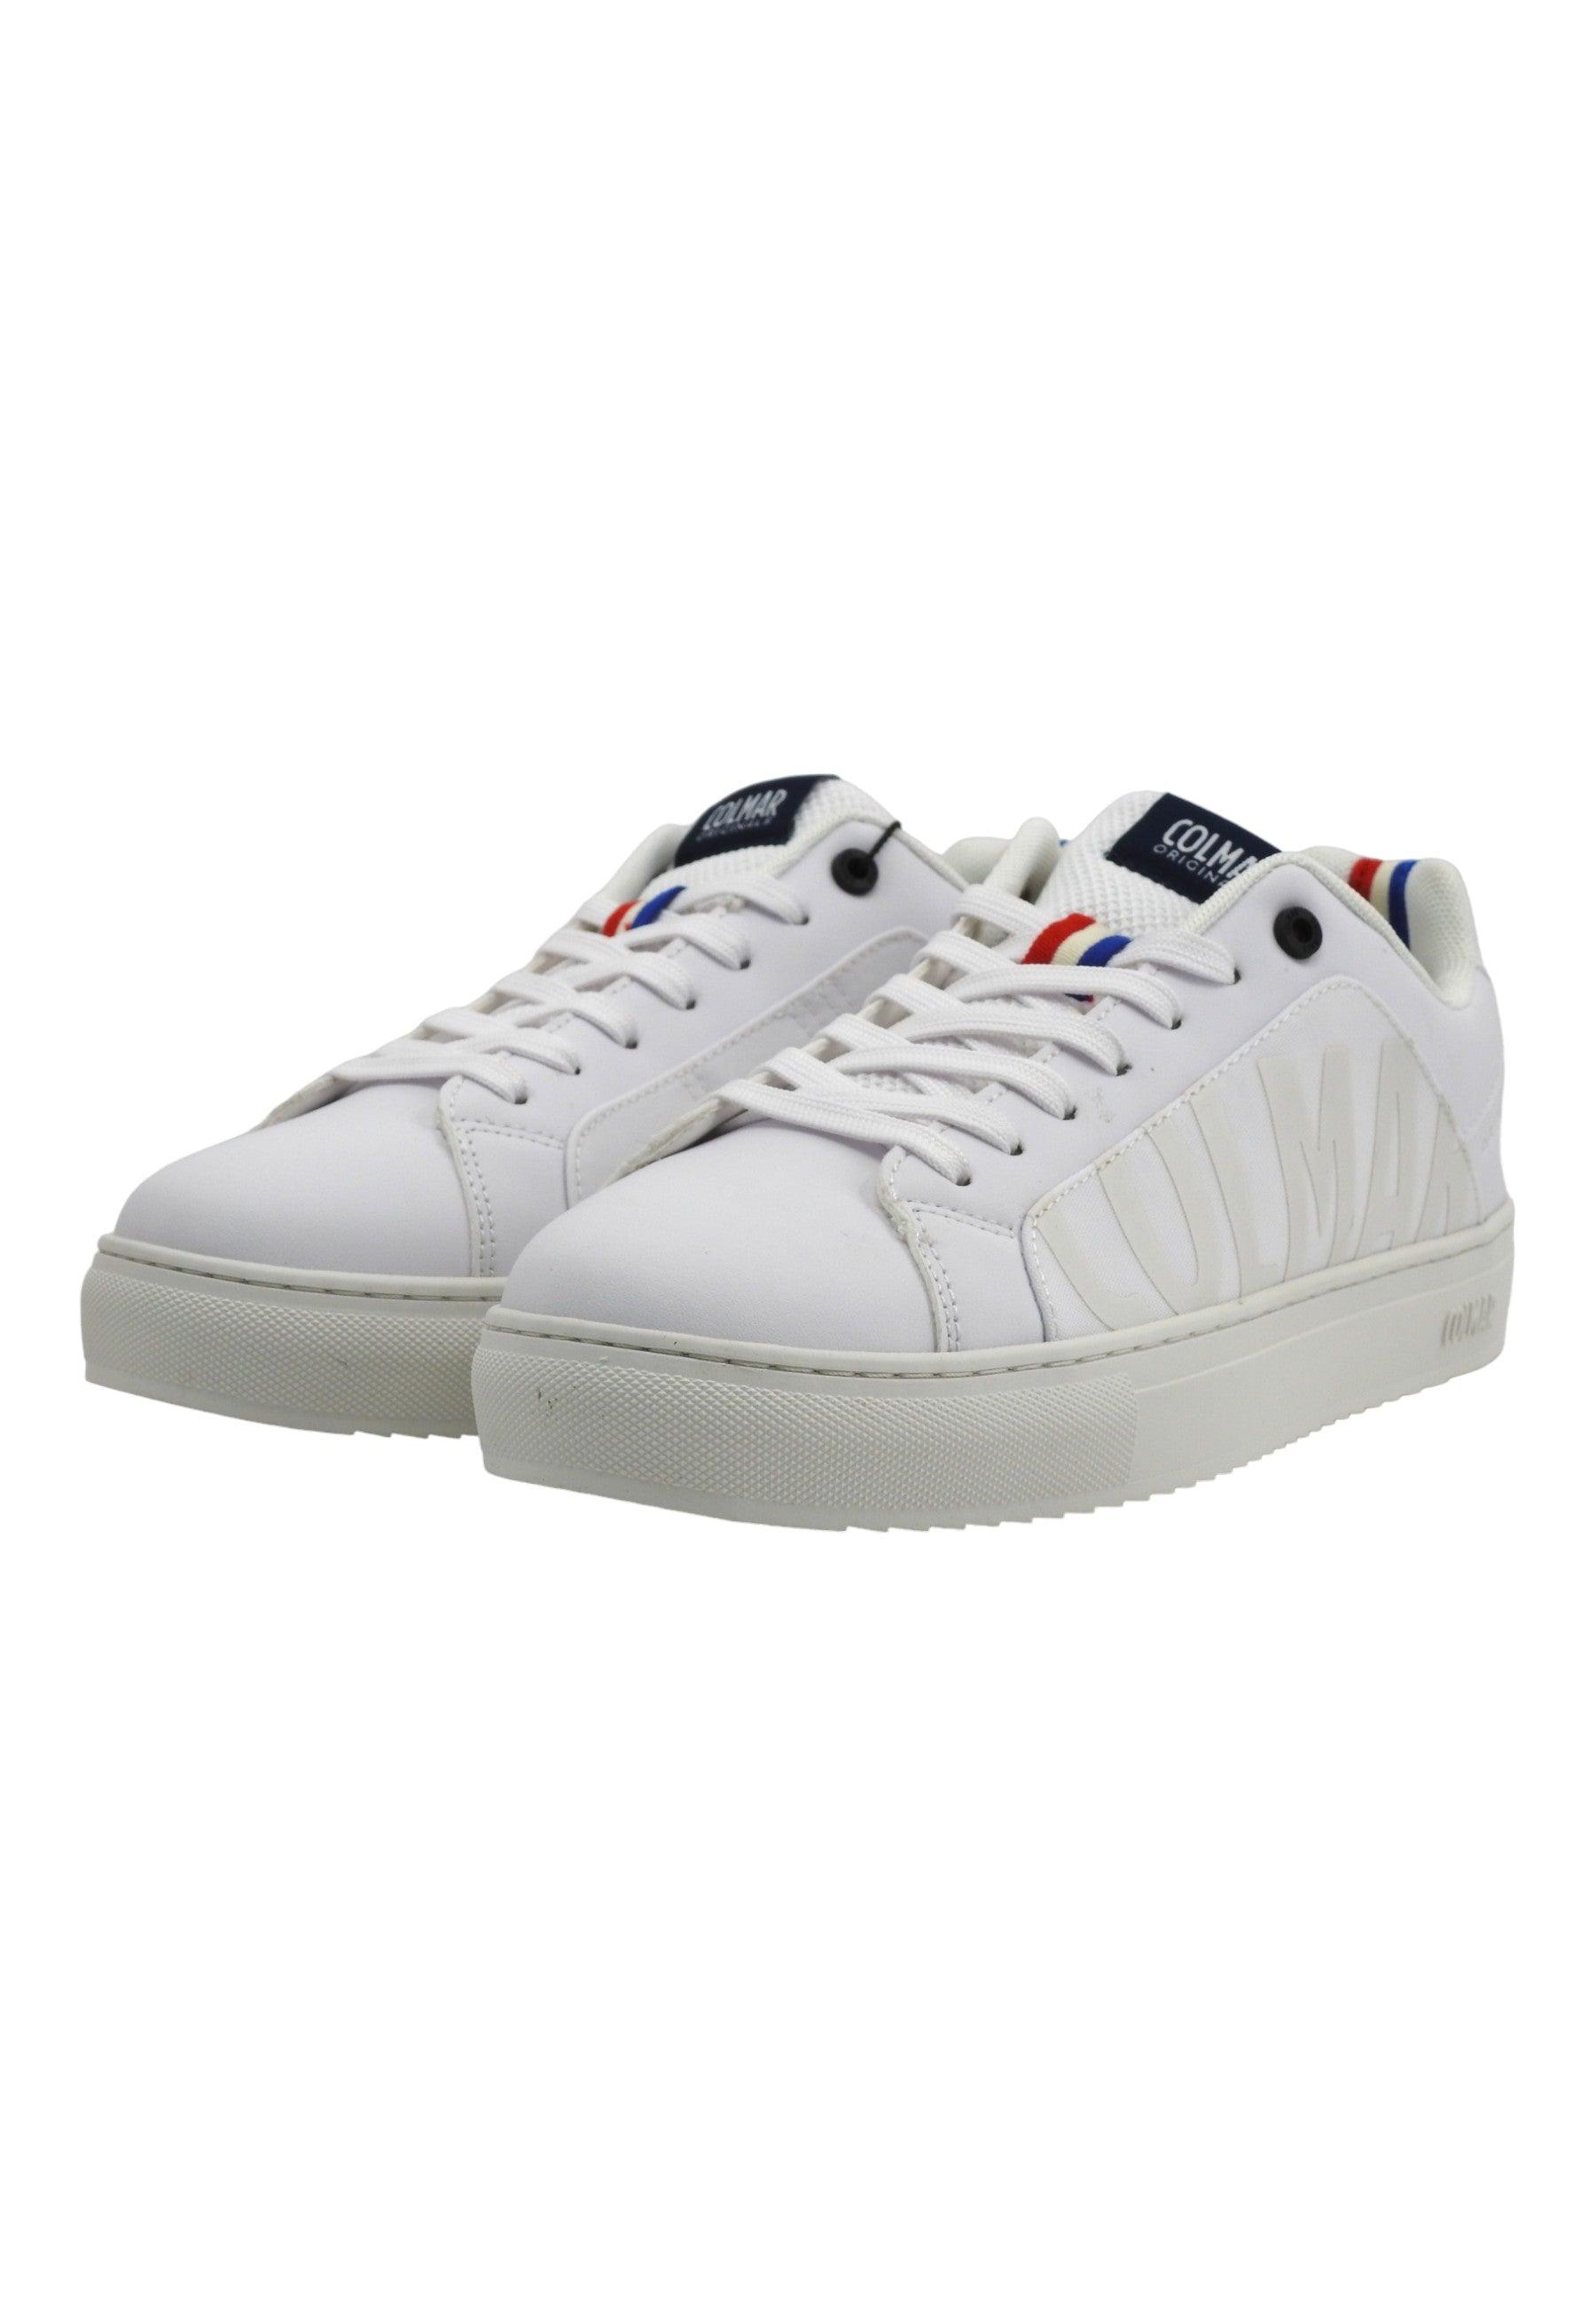 COLMAR Sneaker Uomo White BRADBURY CHROMATIC - Sandrini Calzature e Abbigliamento